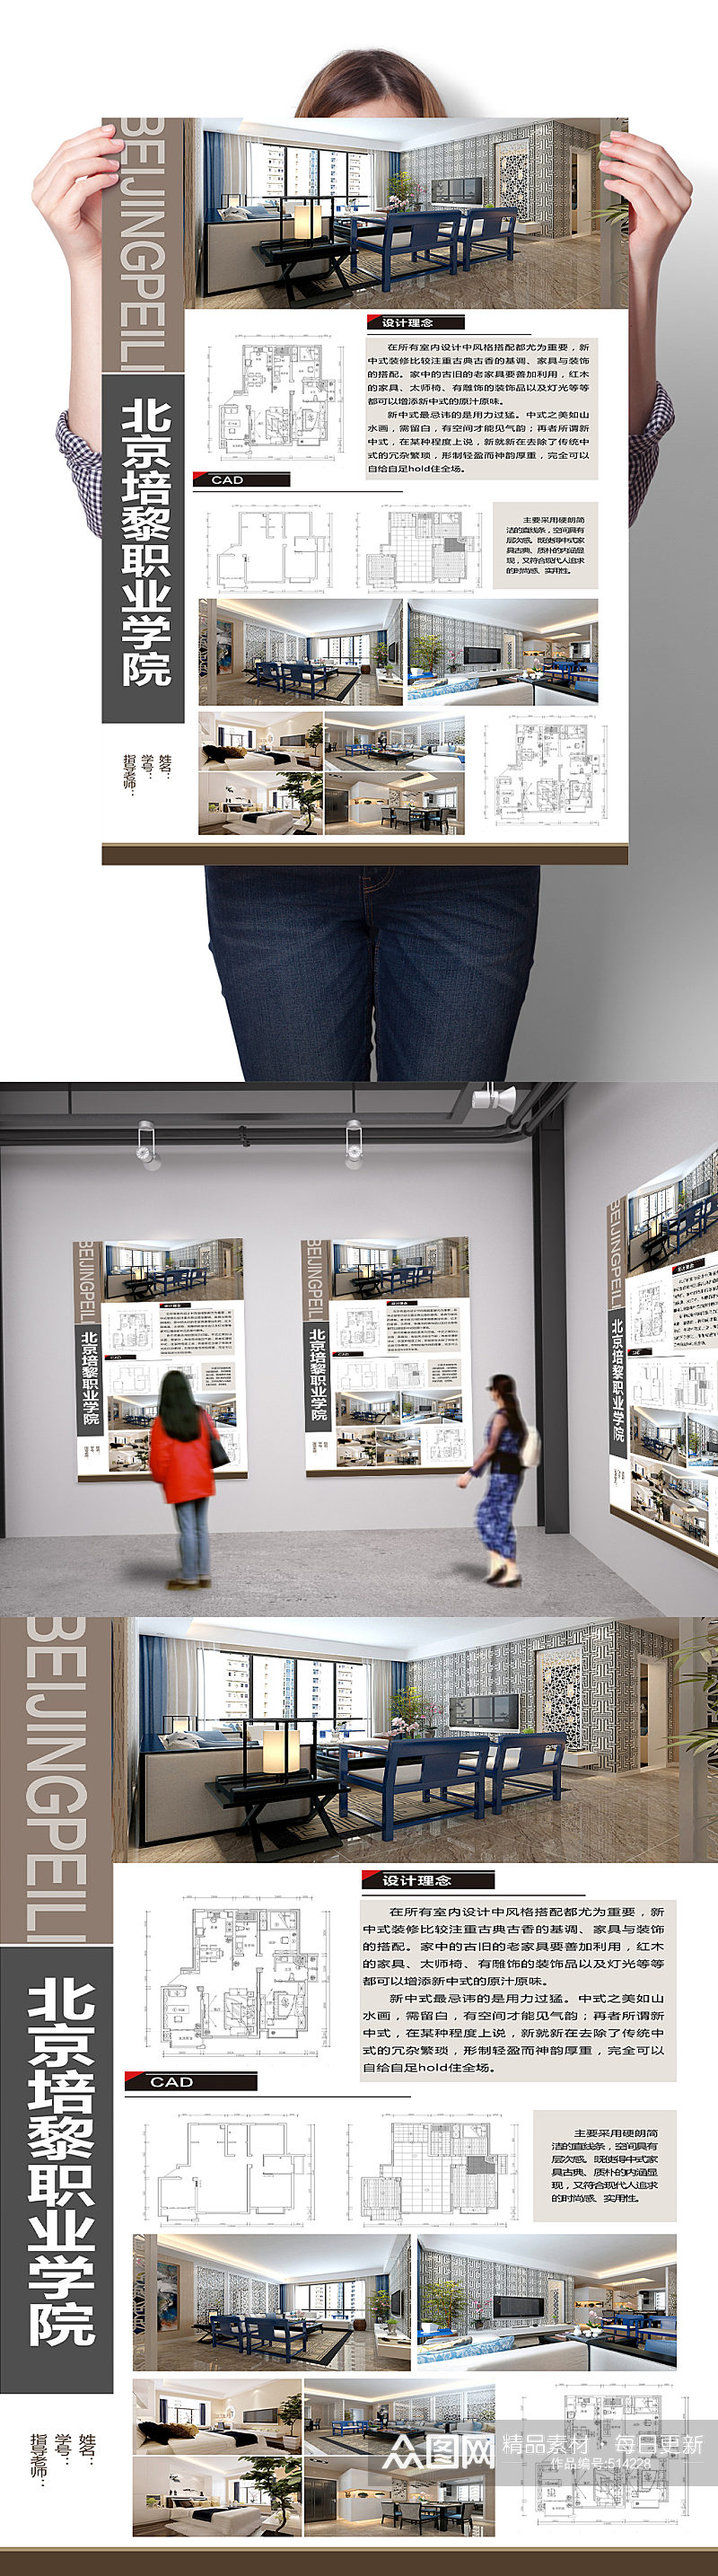 现代奢华家居装修室内设计毕业展海报展板 环艺排版环境艺术版式设计素材